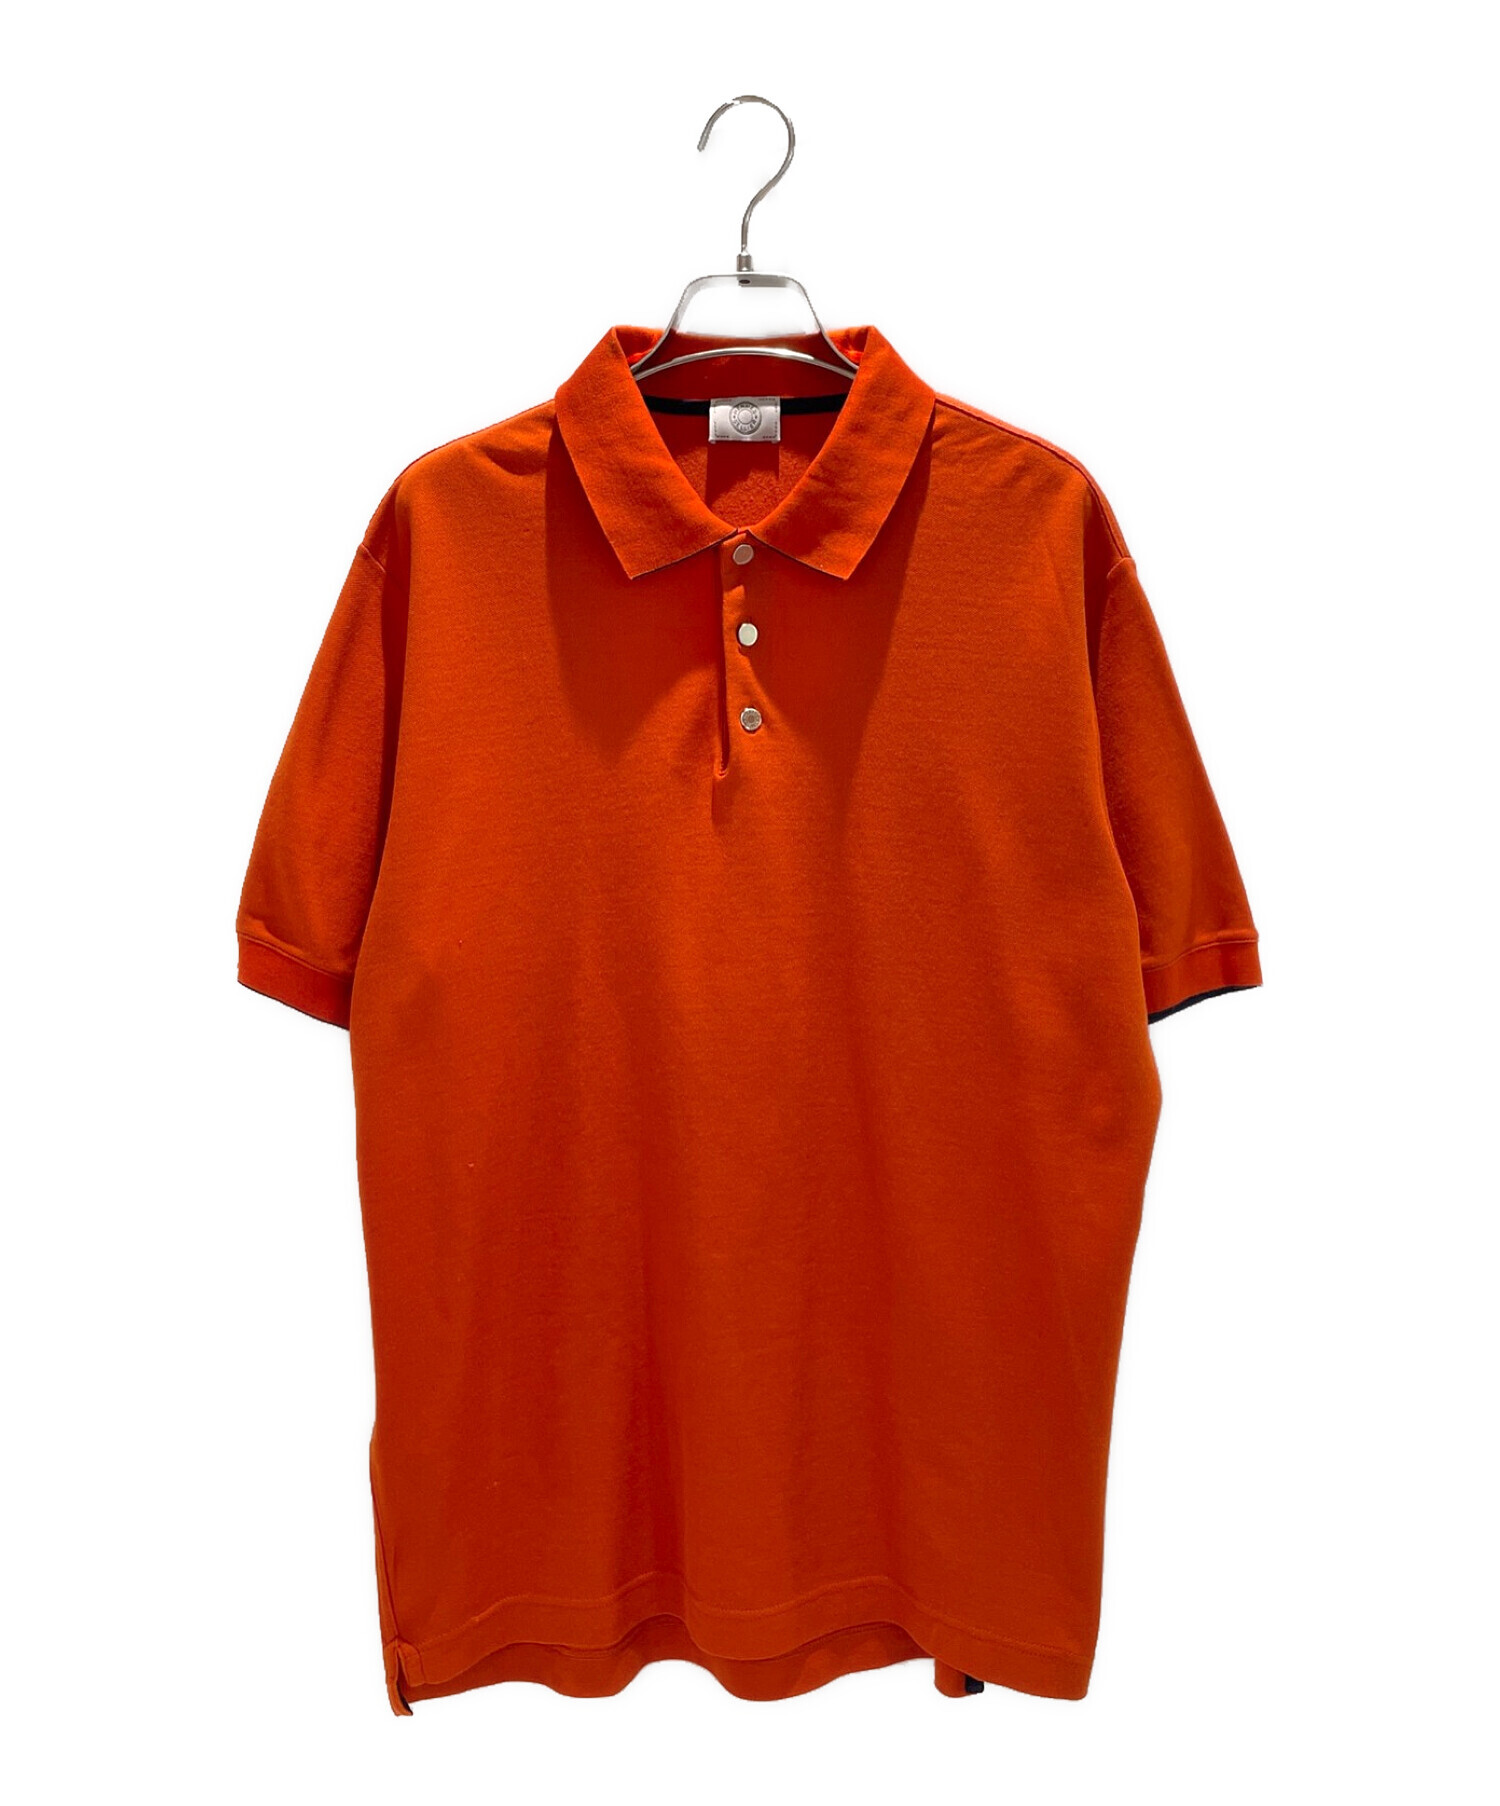 HERMES (エルメス) メタルボタンパイピングポロシャツ オレンジ サイズ:XXXL